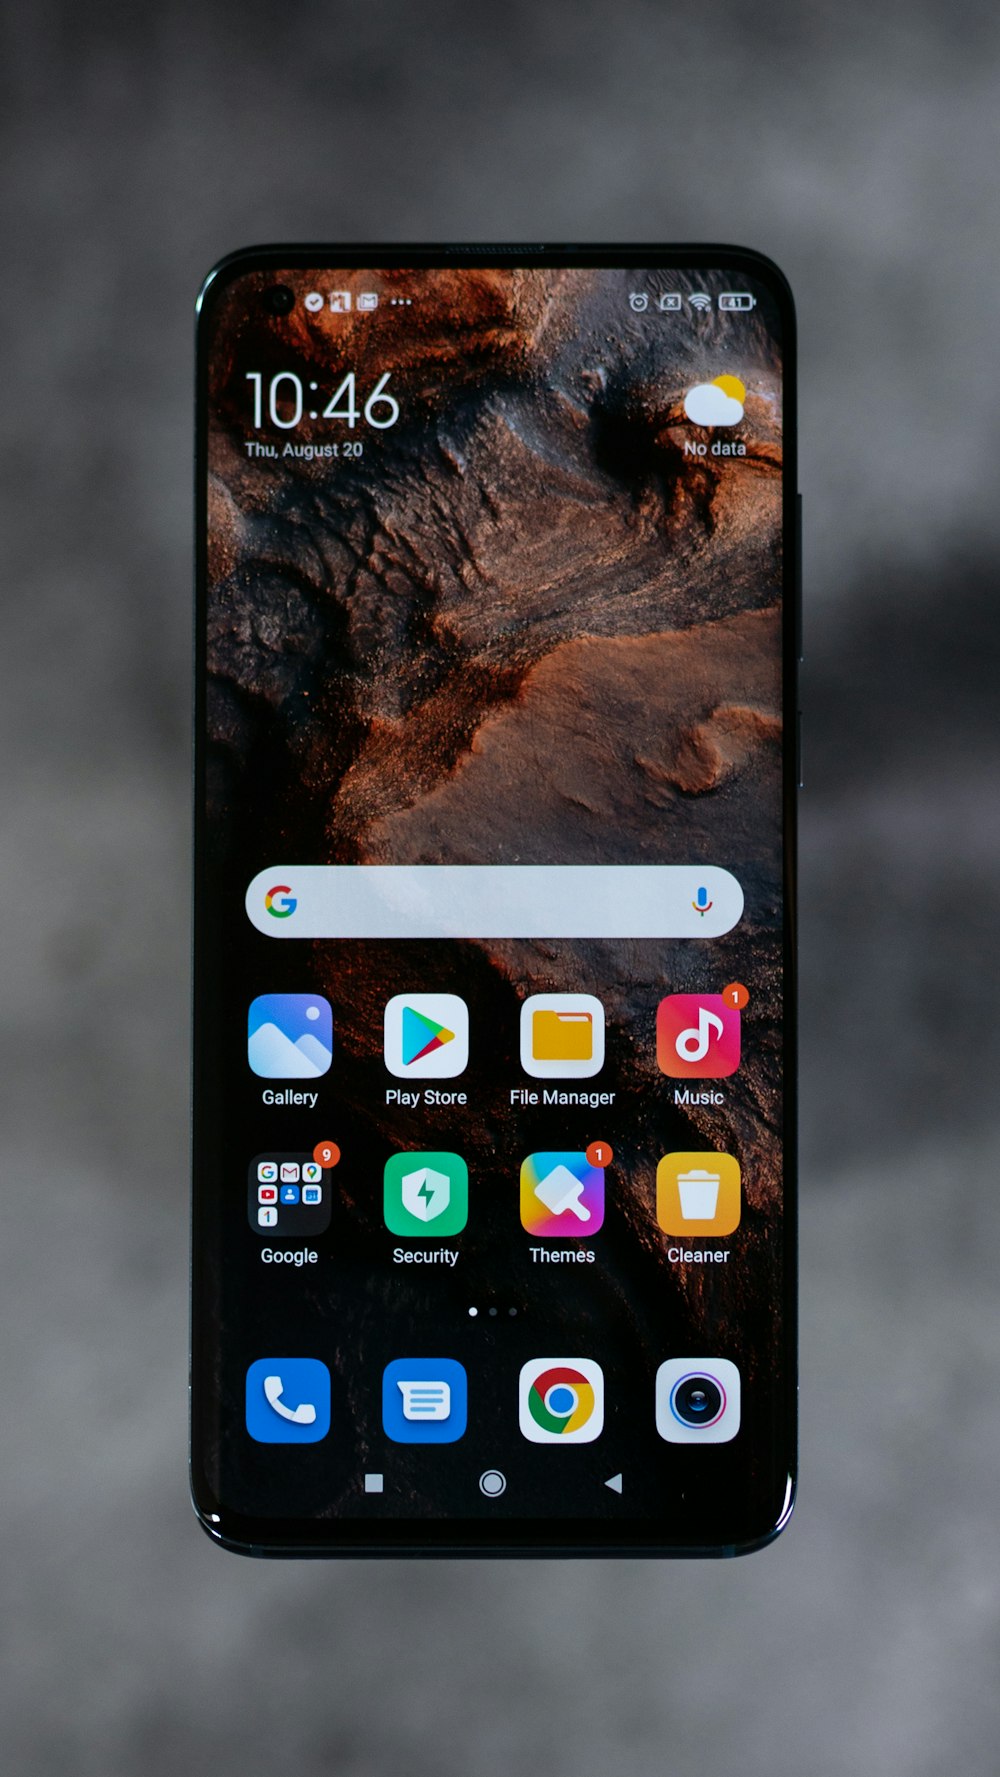 pantalla de iphone que muestra iconos en pantalla